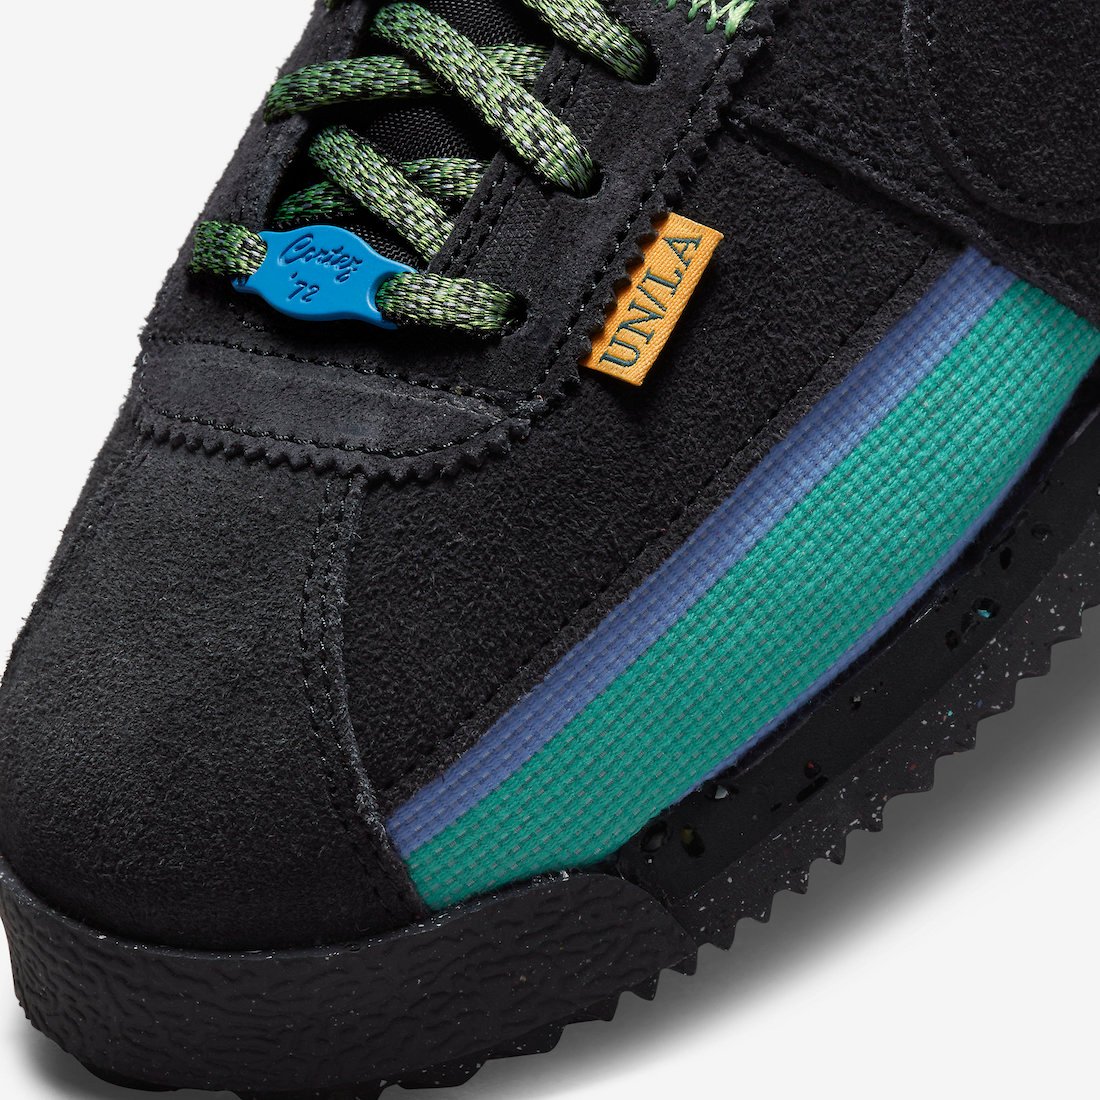 Union Nike Cortez Off Noir DR1413-001 Release Date